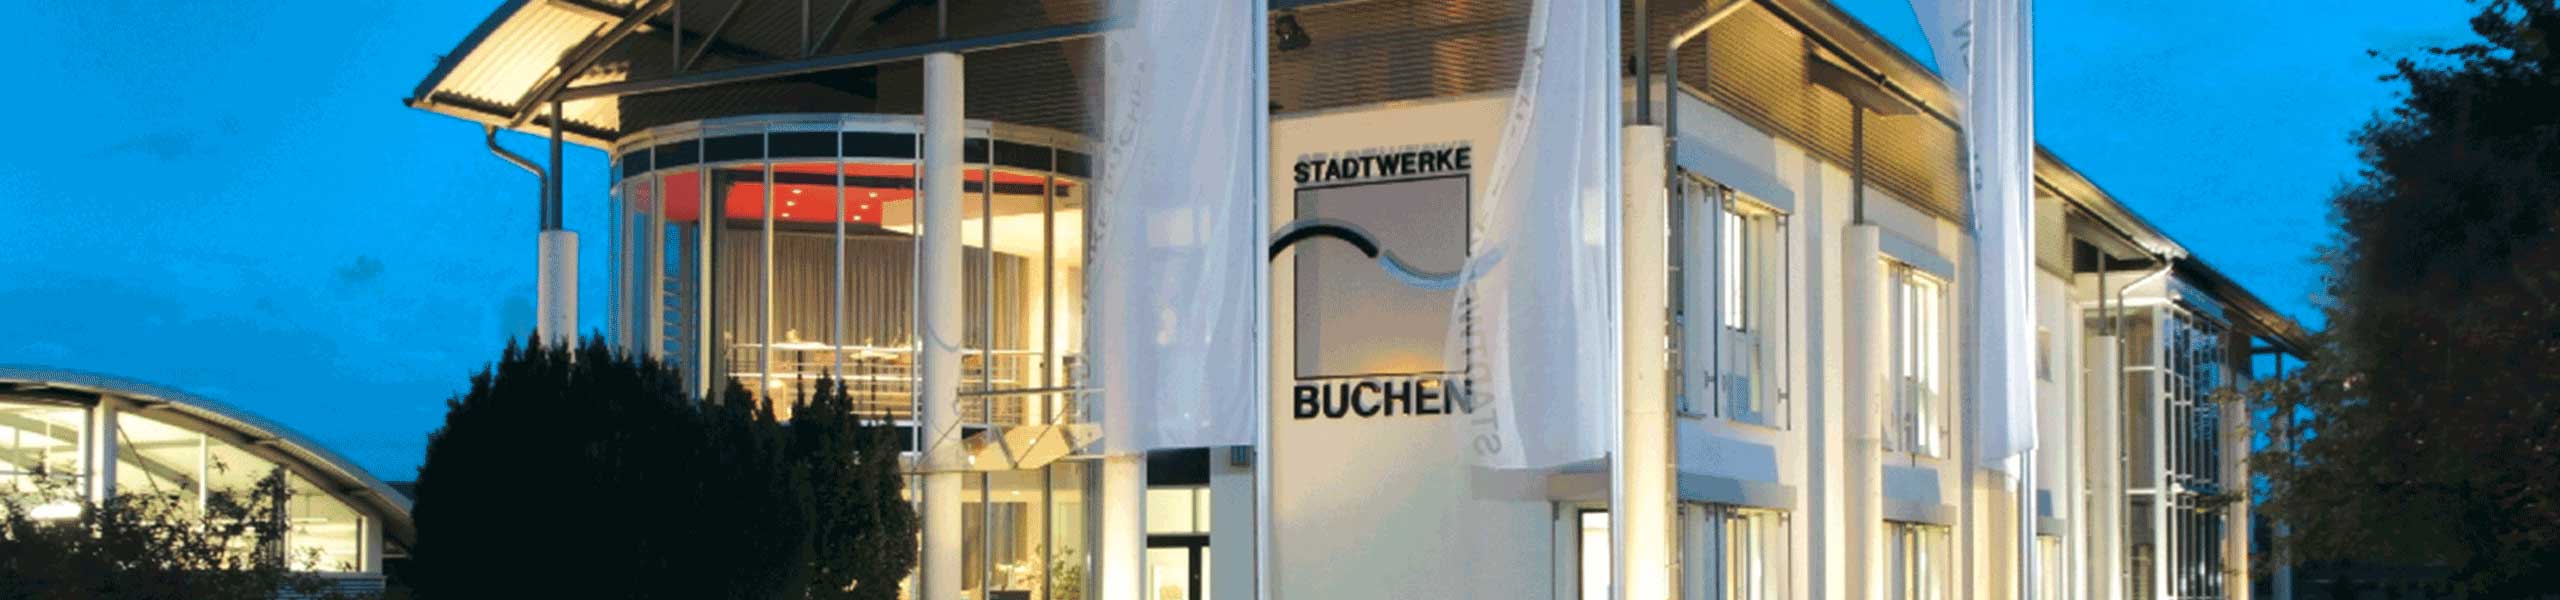 Stadtwerke Buchen GmbH & Co KG - Ihr Versorger vor Ort - toni